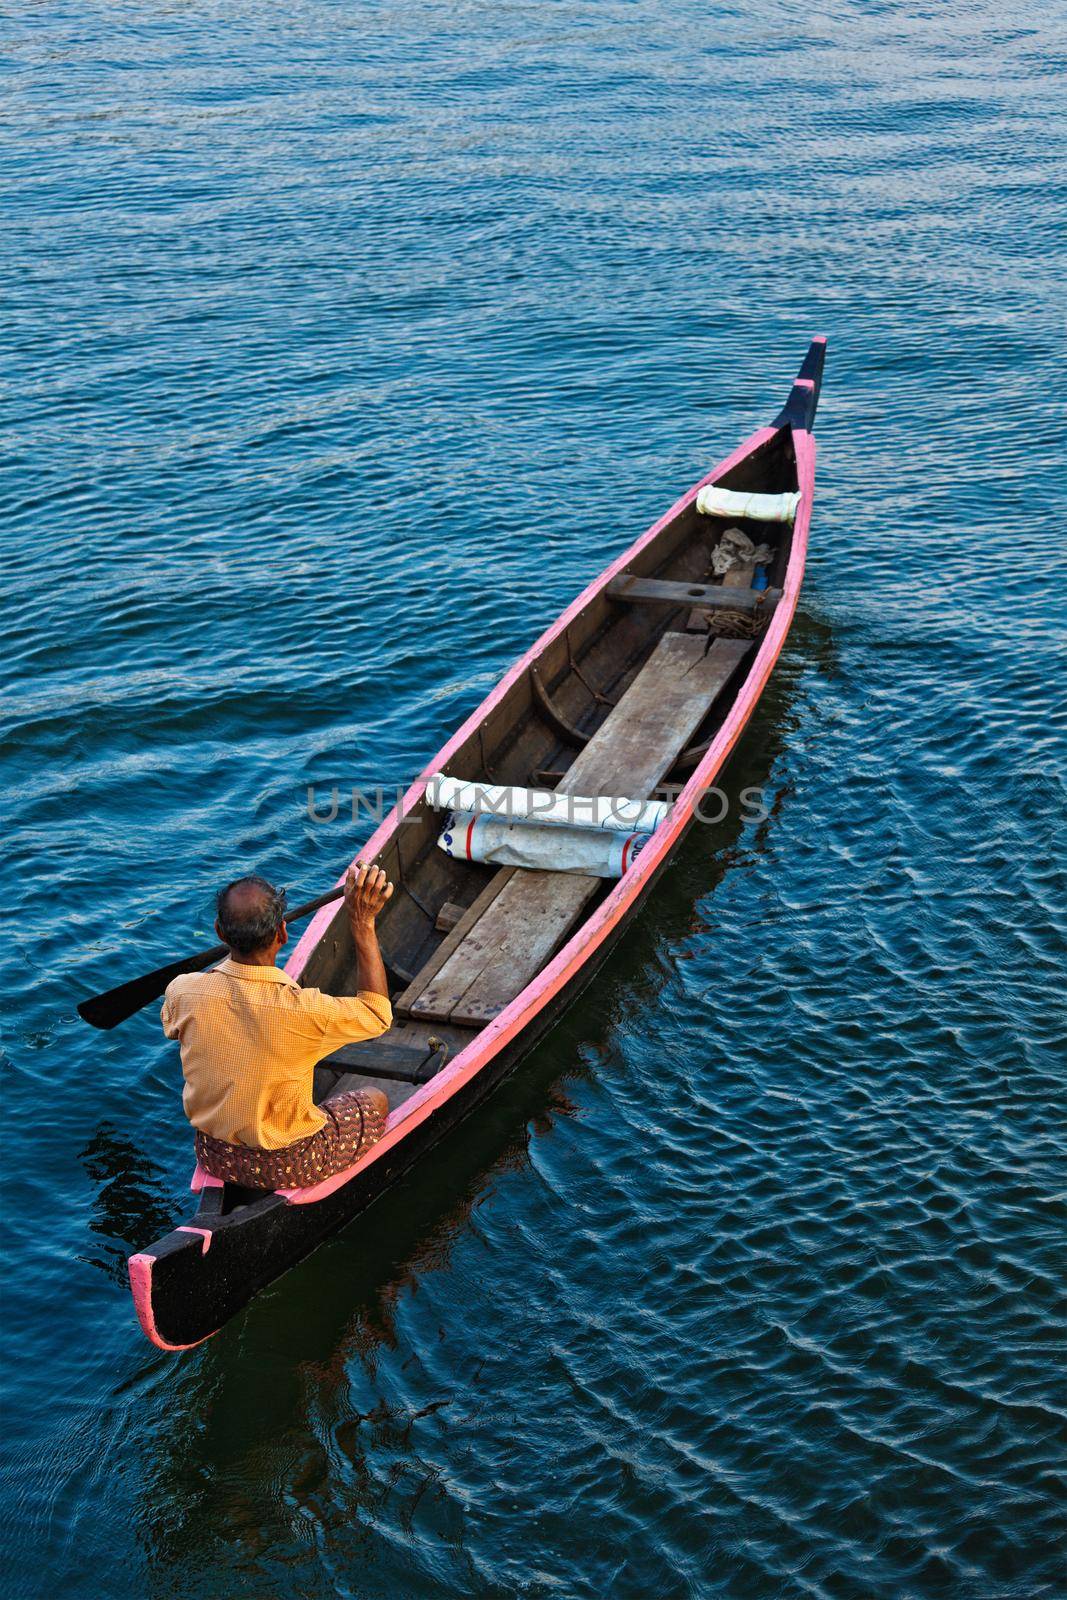 Man in boat. Kerala backwaters by dimol